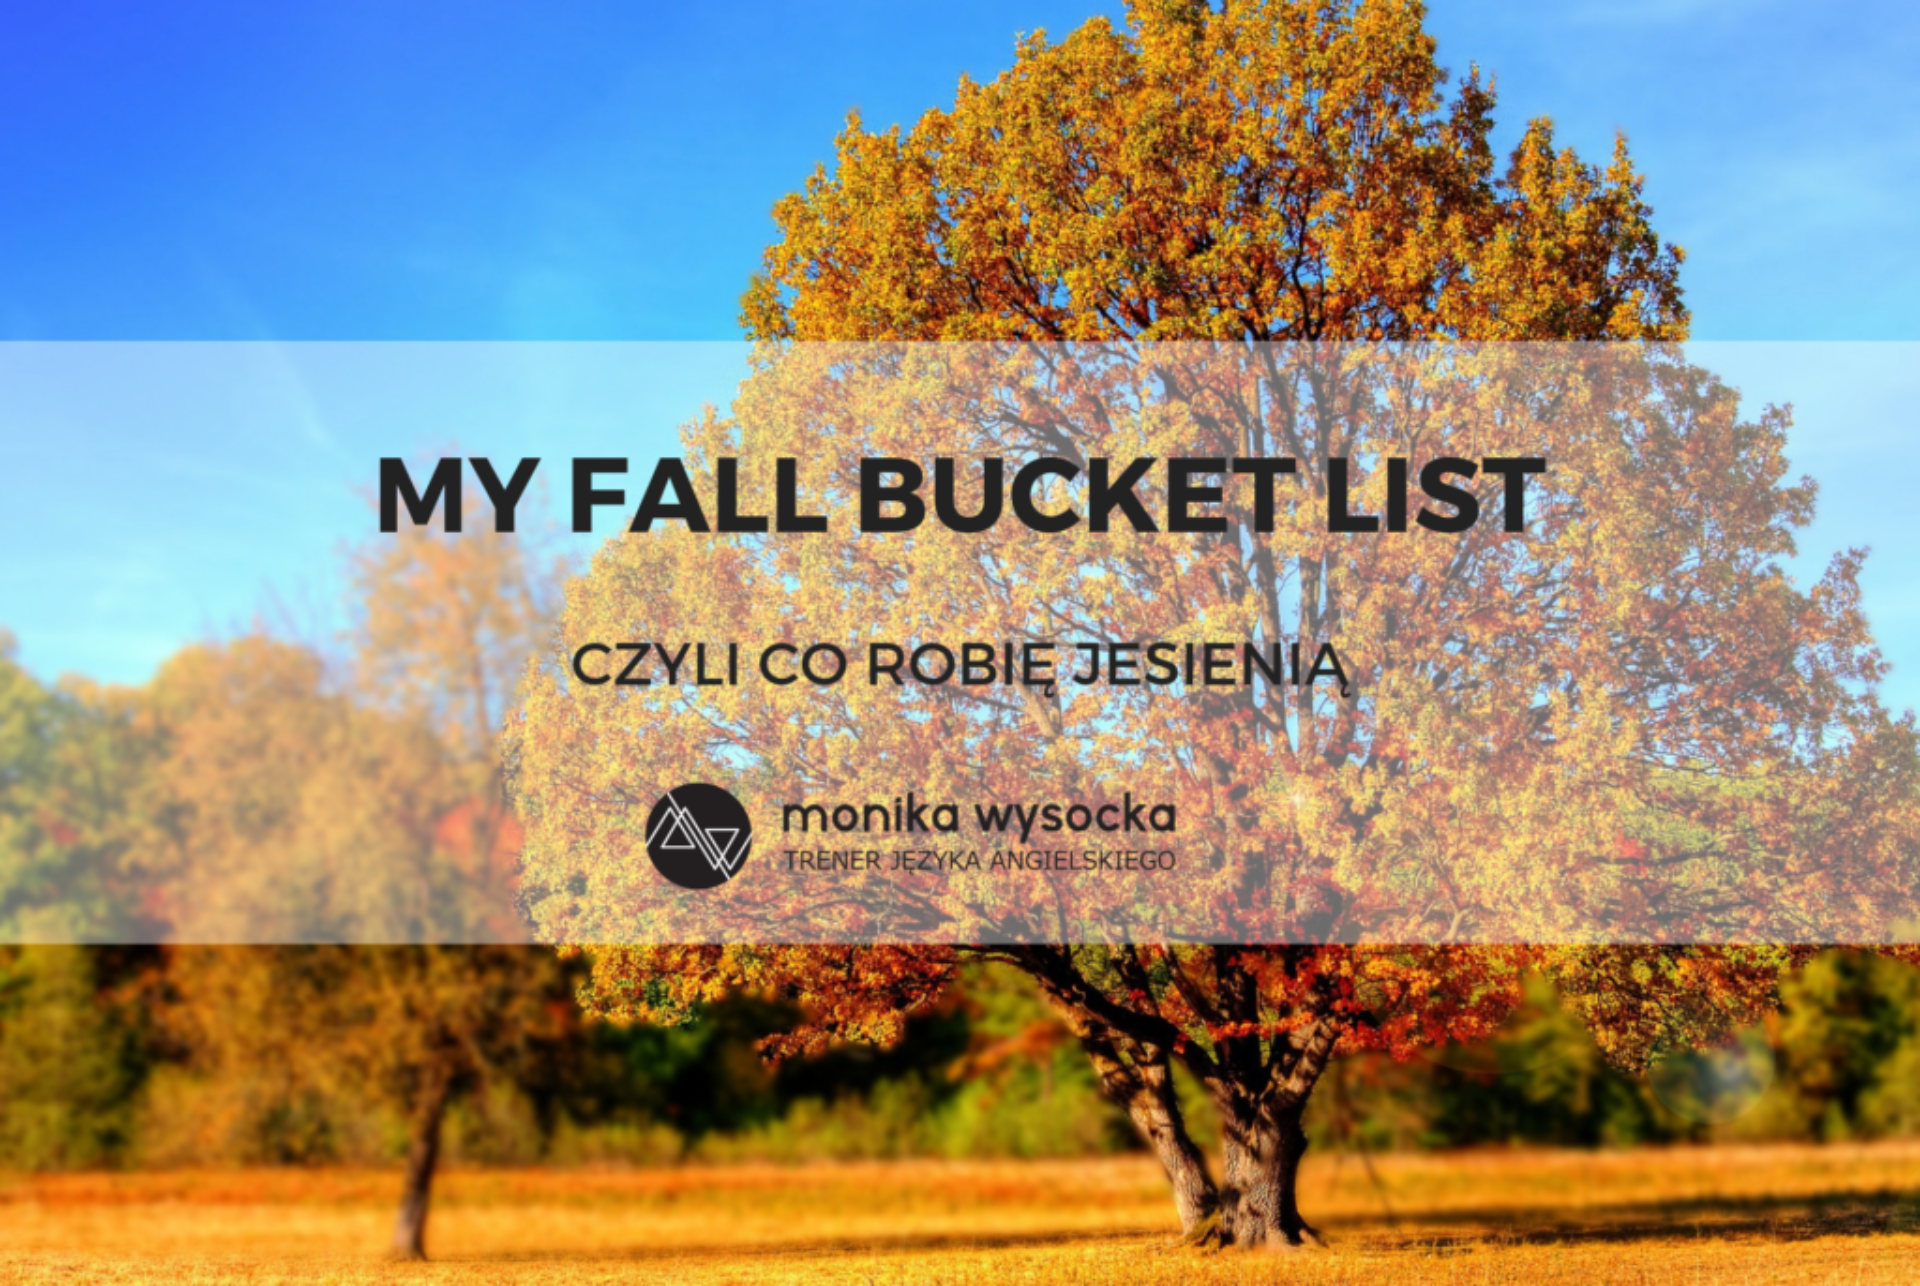 My fall bucket list, czyli co robię jesienią